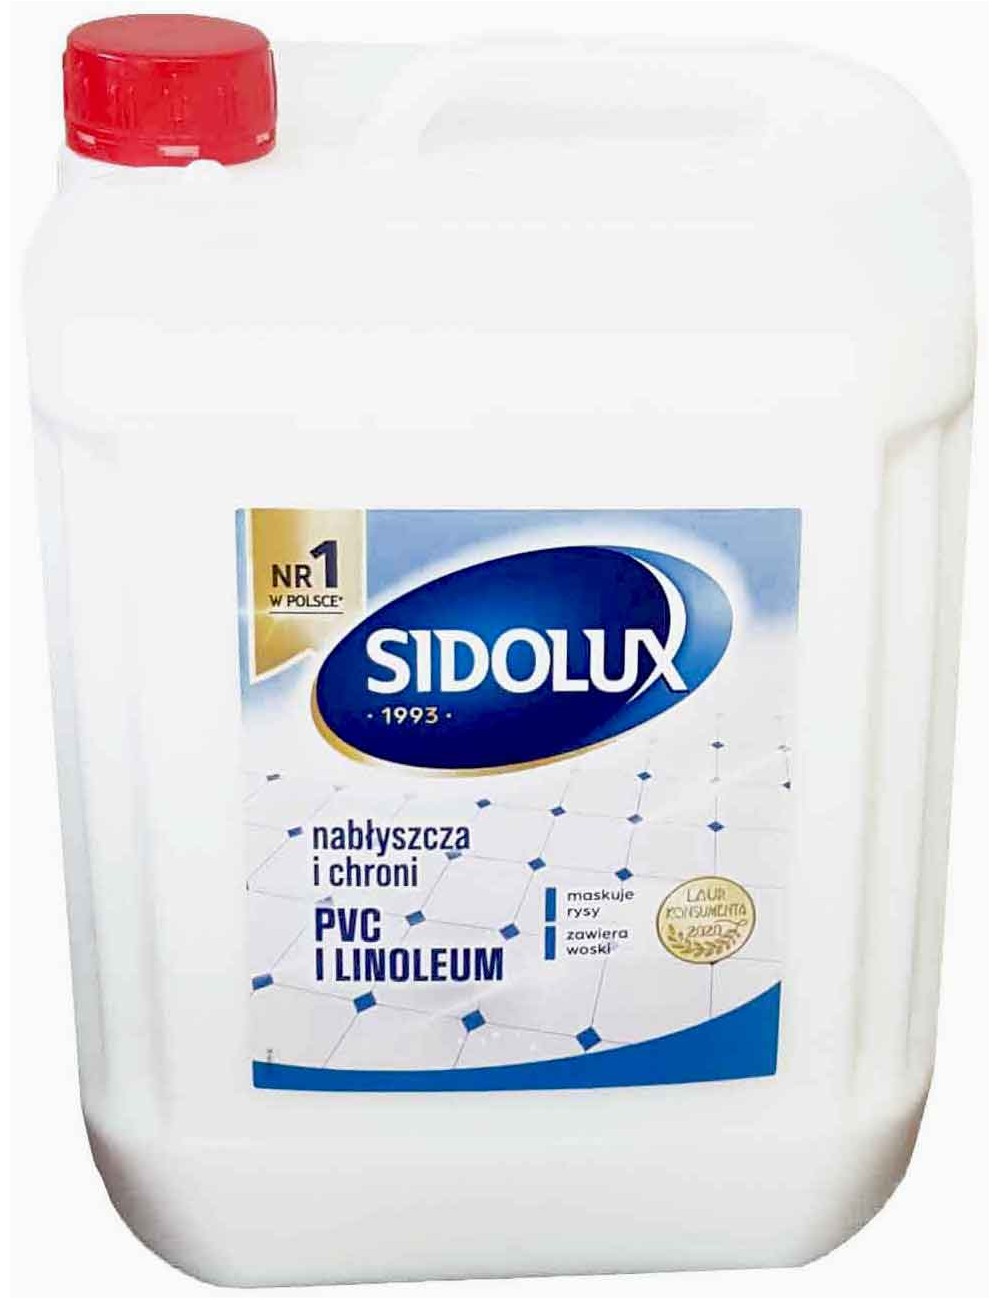 Sidolux 5L Pasta Samopołyskowa – pasta do nabłyszczania pvc i linoleum